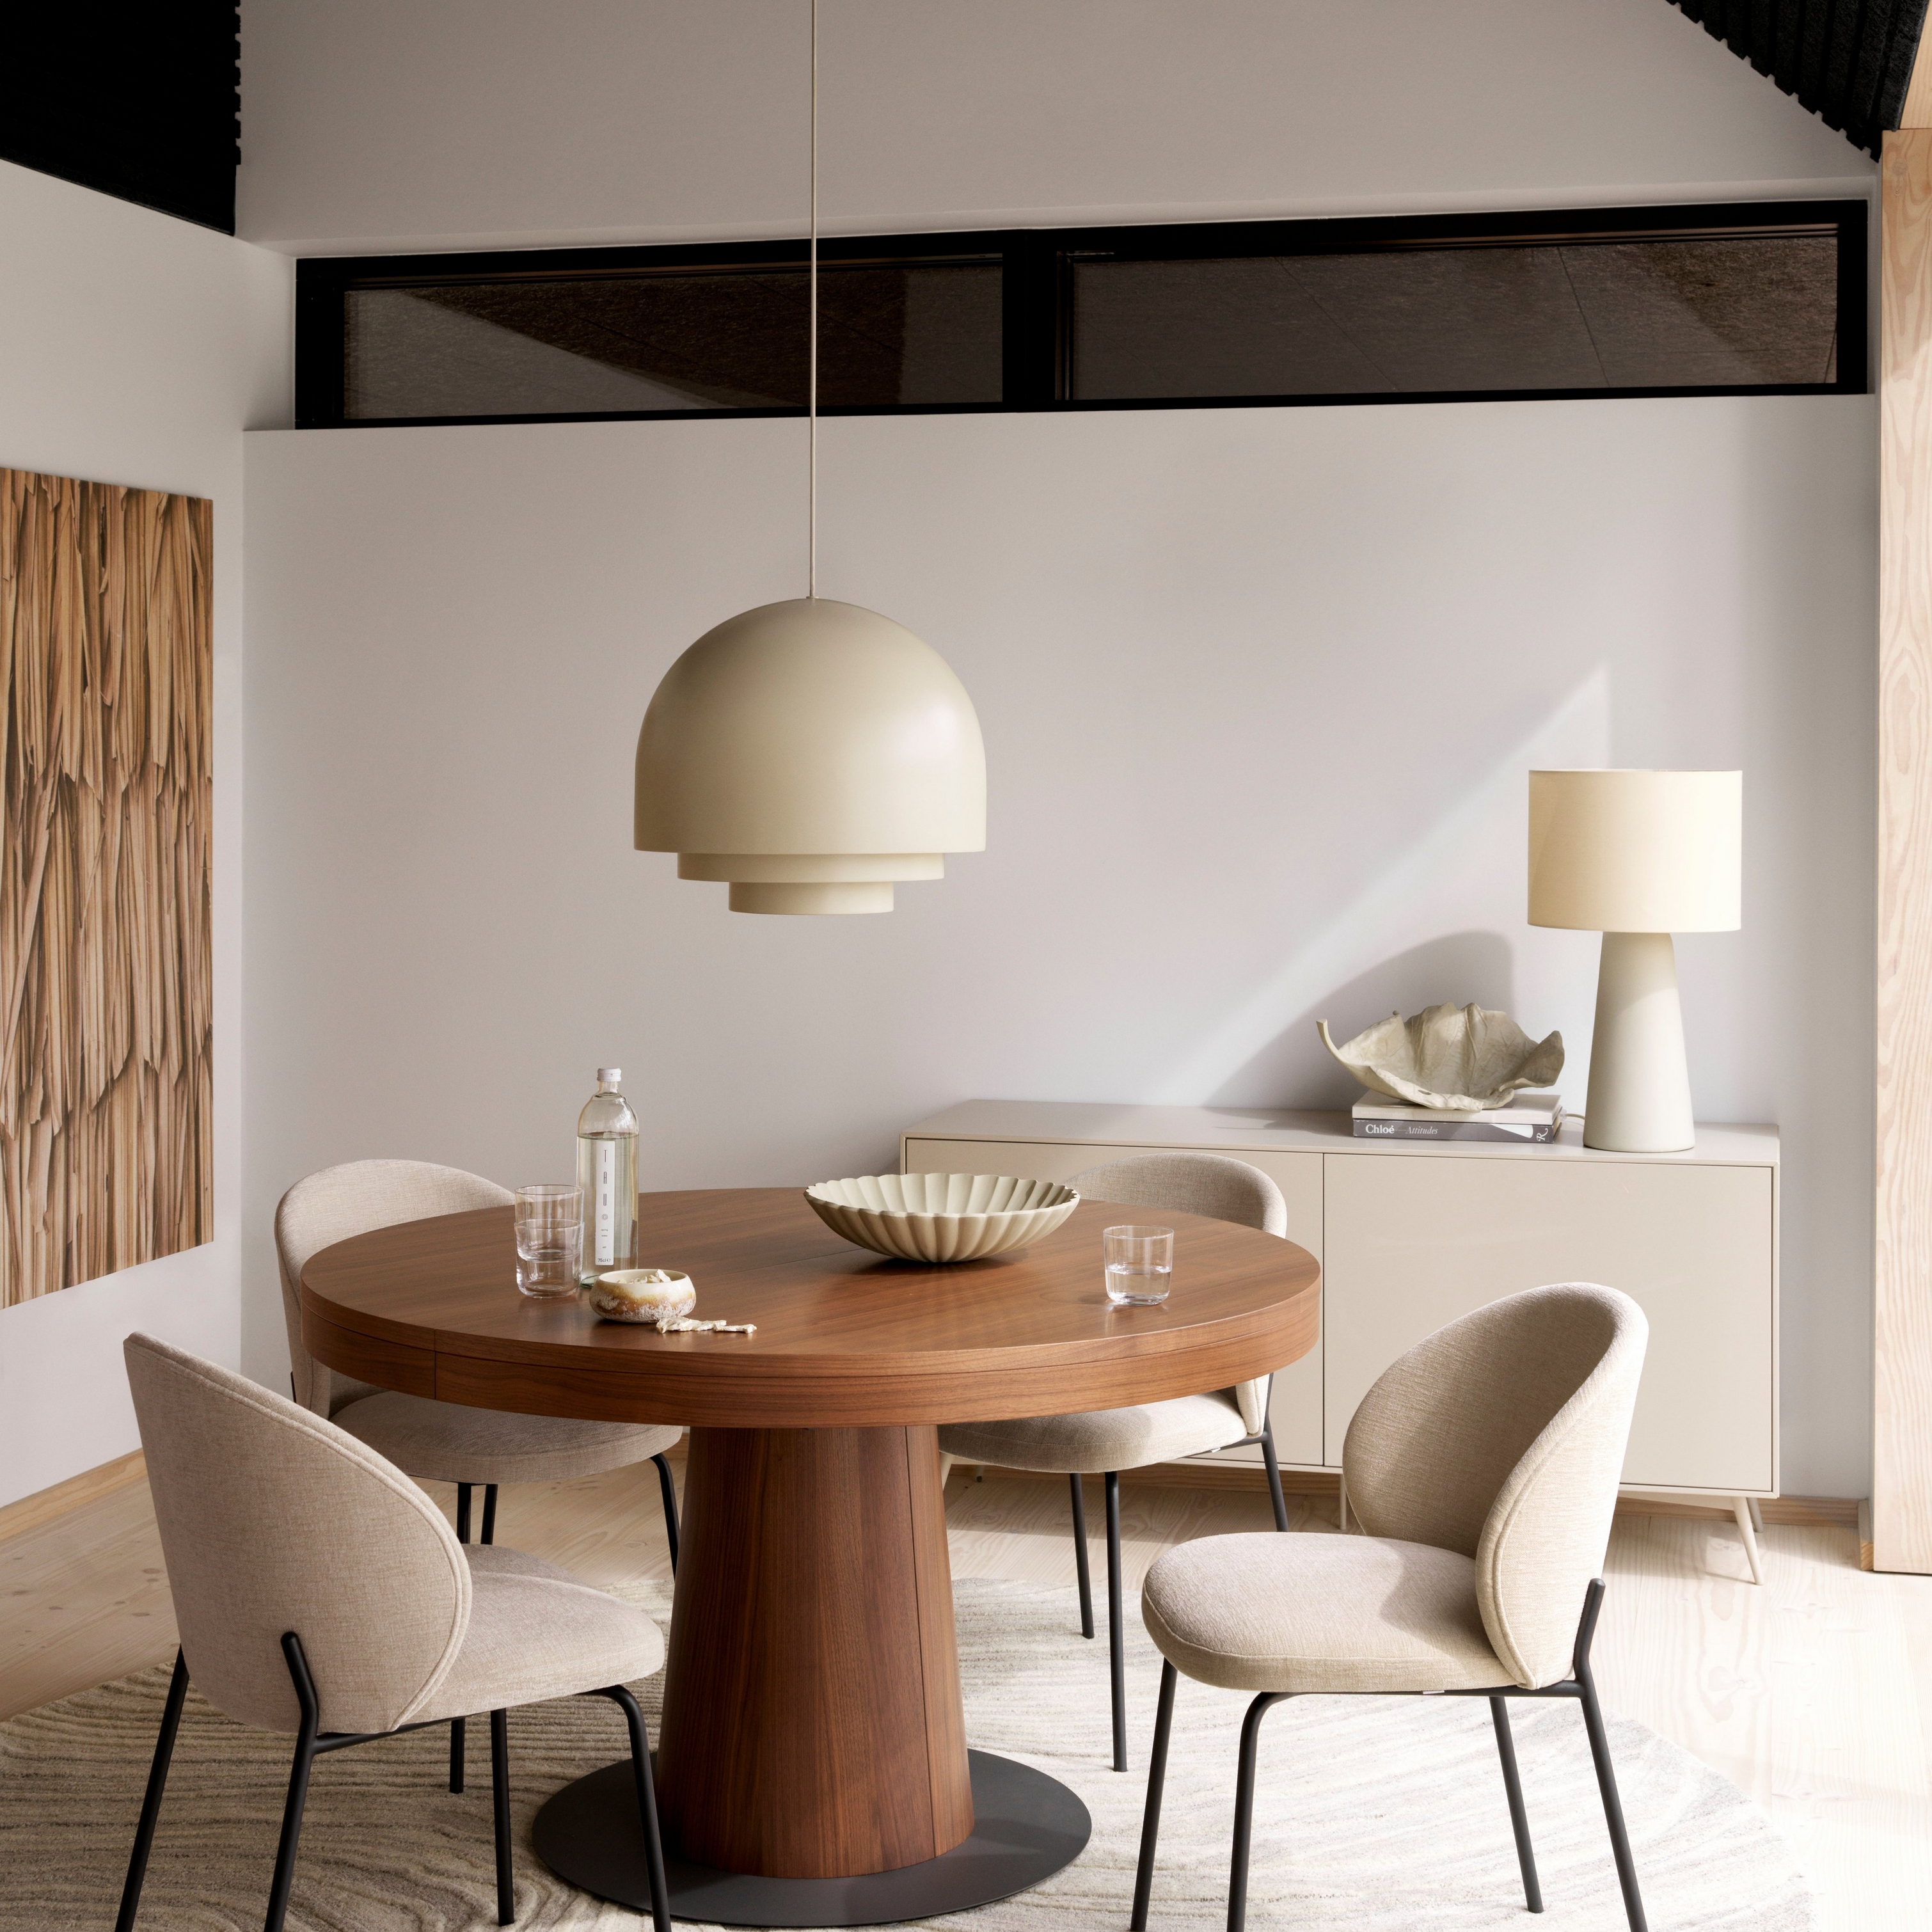 Moderni ruokailutila, jossa on pyöreä Granada-pöytä, beiget Princeton-tuolit, riippuvalaisin ja kermanvärinen matto.